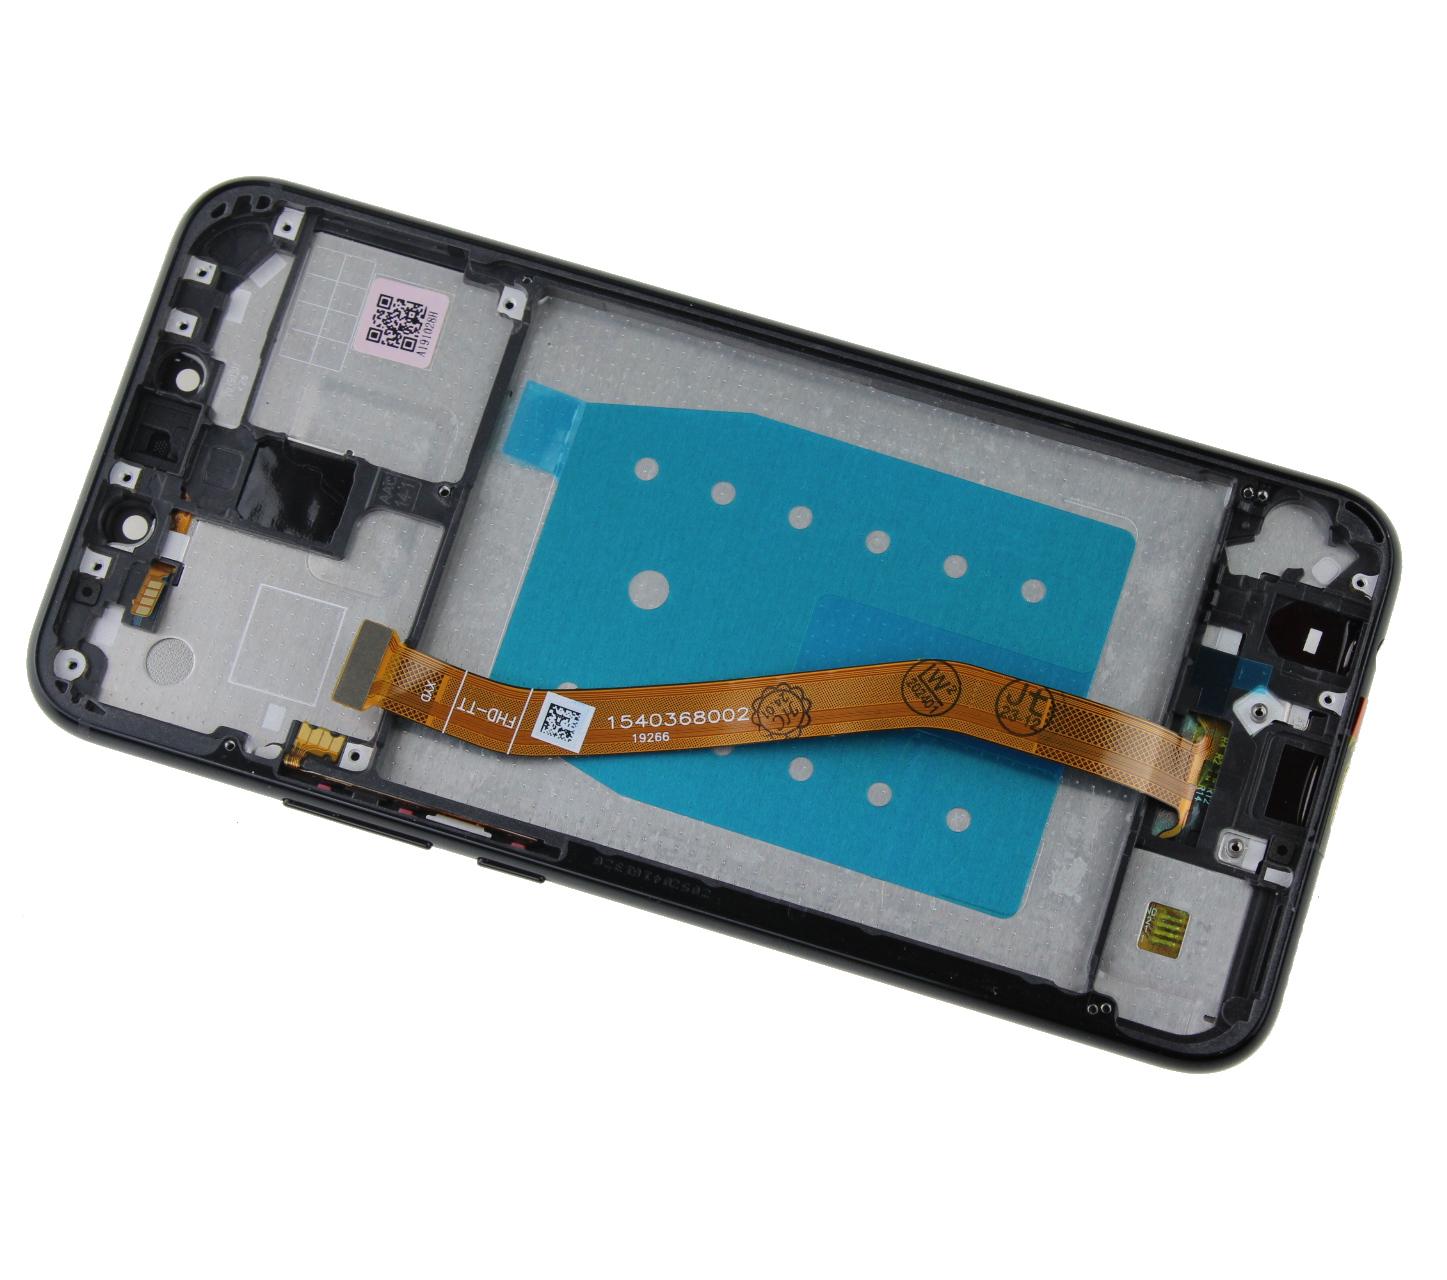 Originál LCD + Dotyková vrstva Huawei Mate 20 Lite SNE-AL00 - SNE-LX1černá repasovaný díl - vyměněné sklíčko